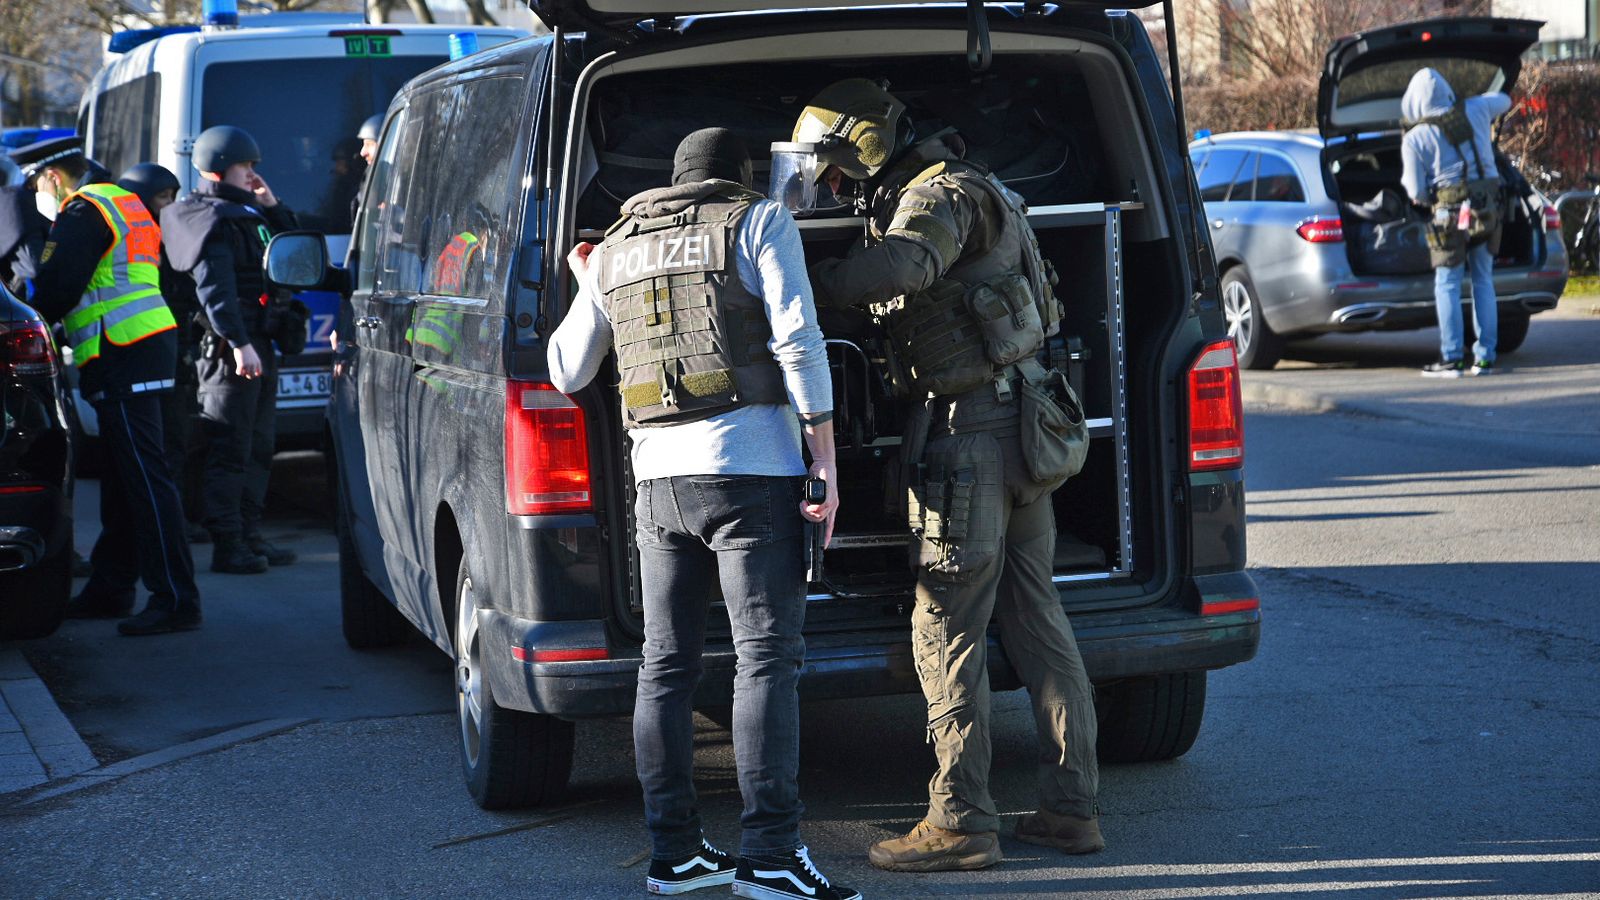 Germany: Lone gunman dead after shooting several people at university in Heidelberg